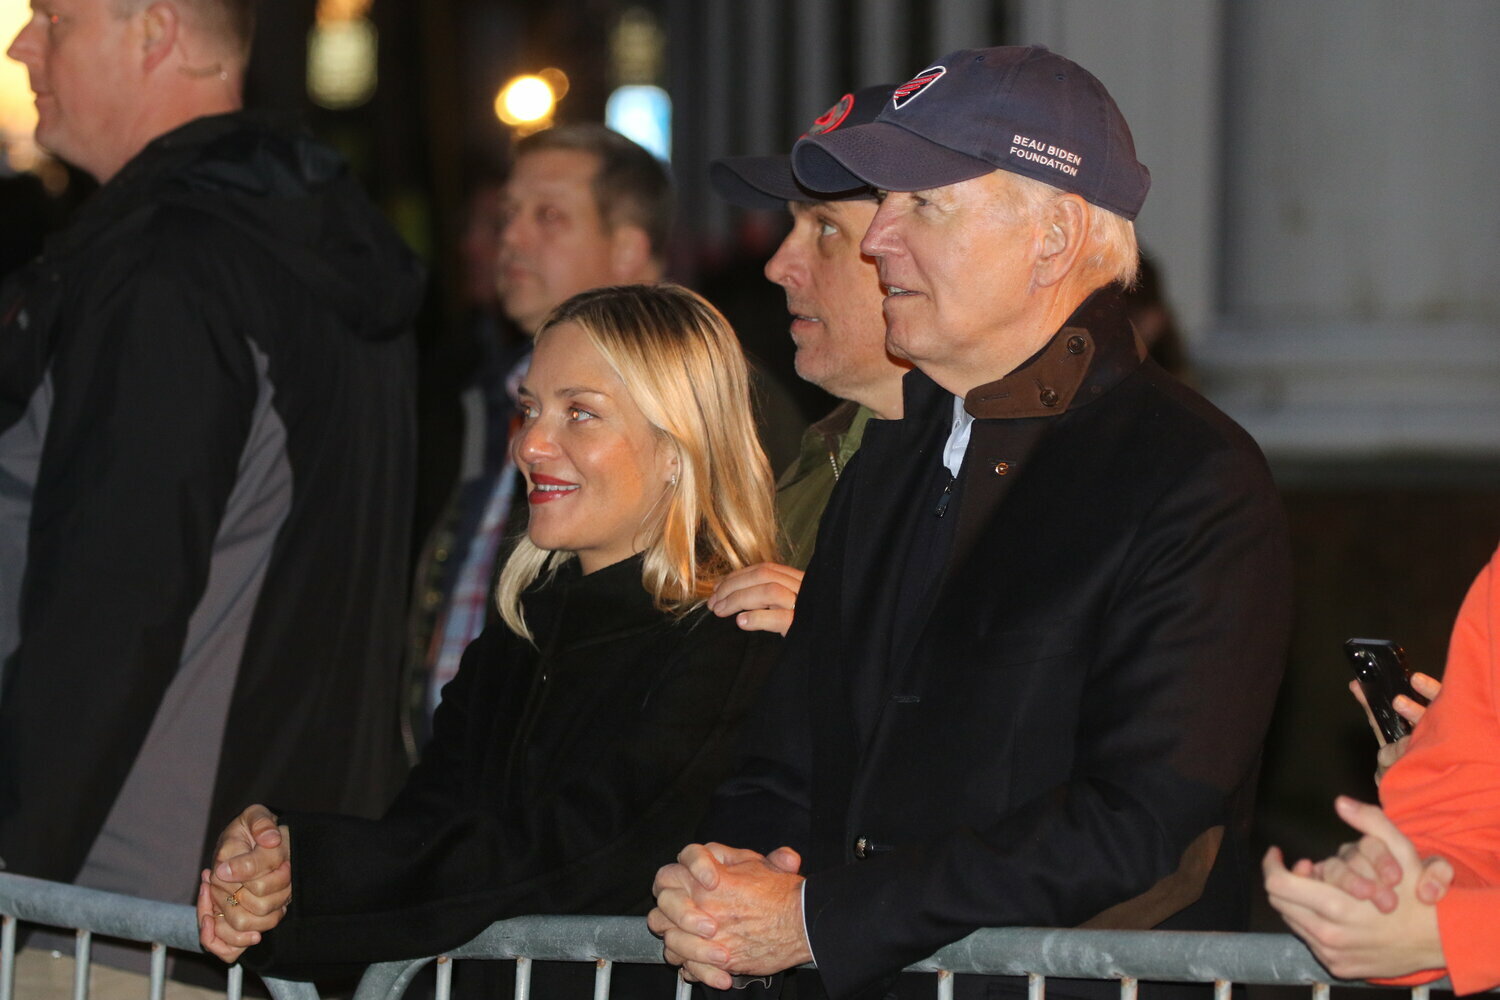 The Biden family at Friday's Main Street tree-lighting.